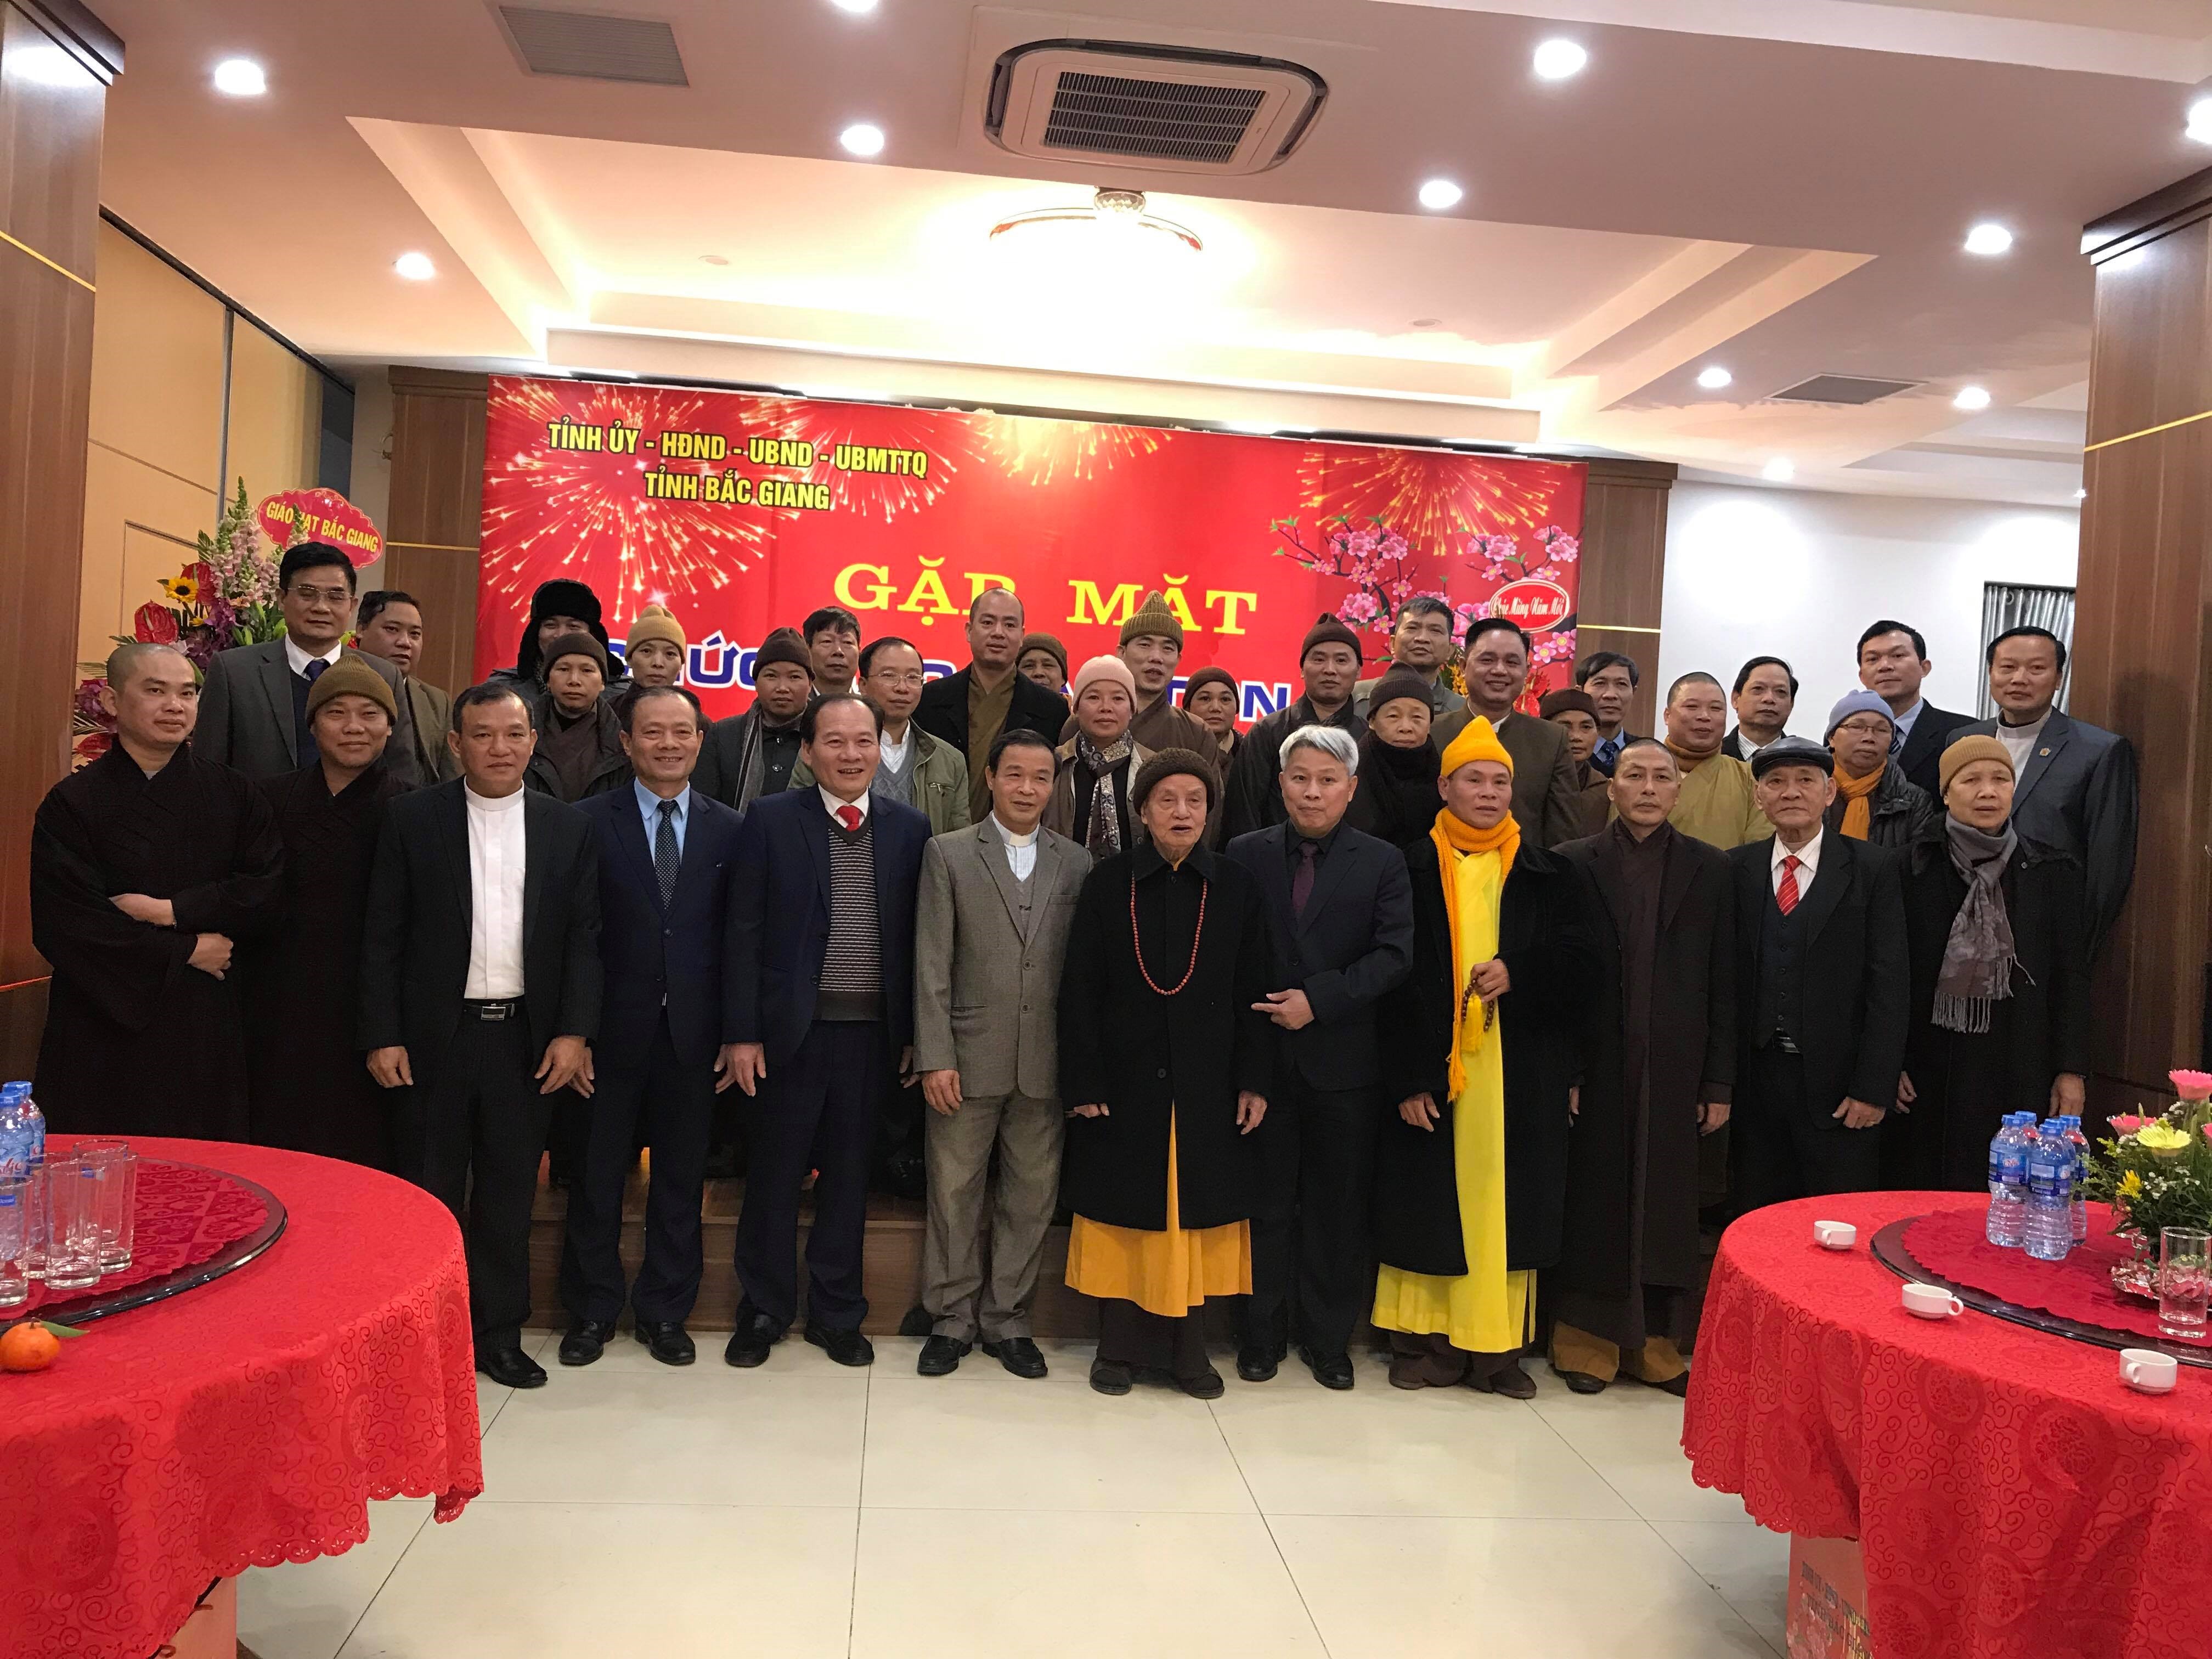 Lãnh đạo tỉnh gặp mặt chức sắc các Tôn giáo trên địa bàn tỉnh Bắc Giang năm 2019